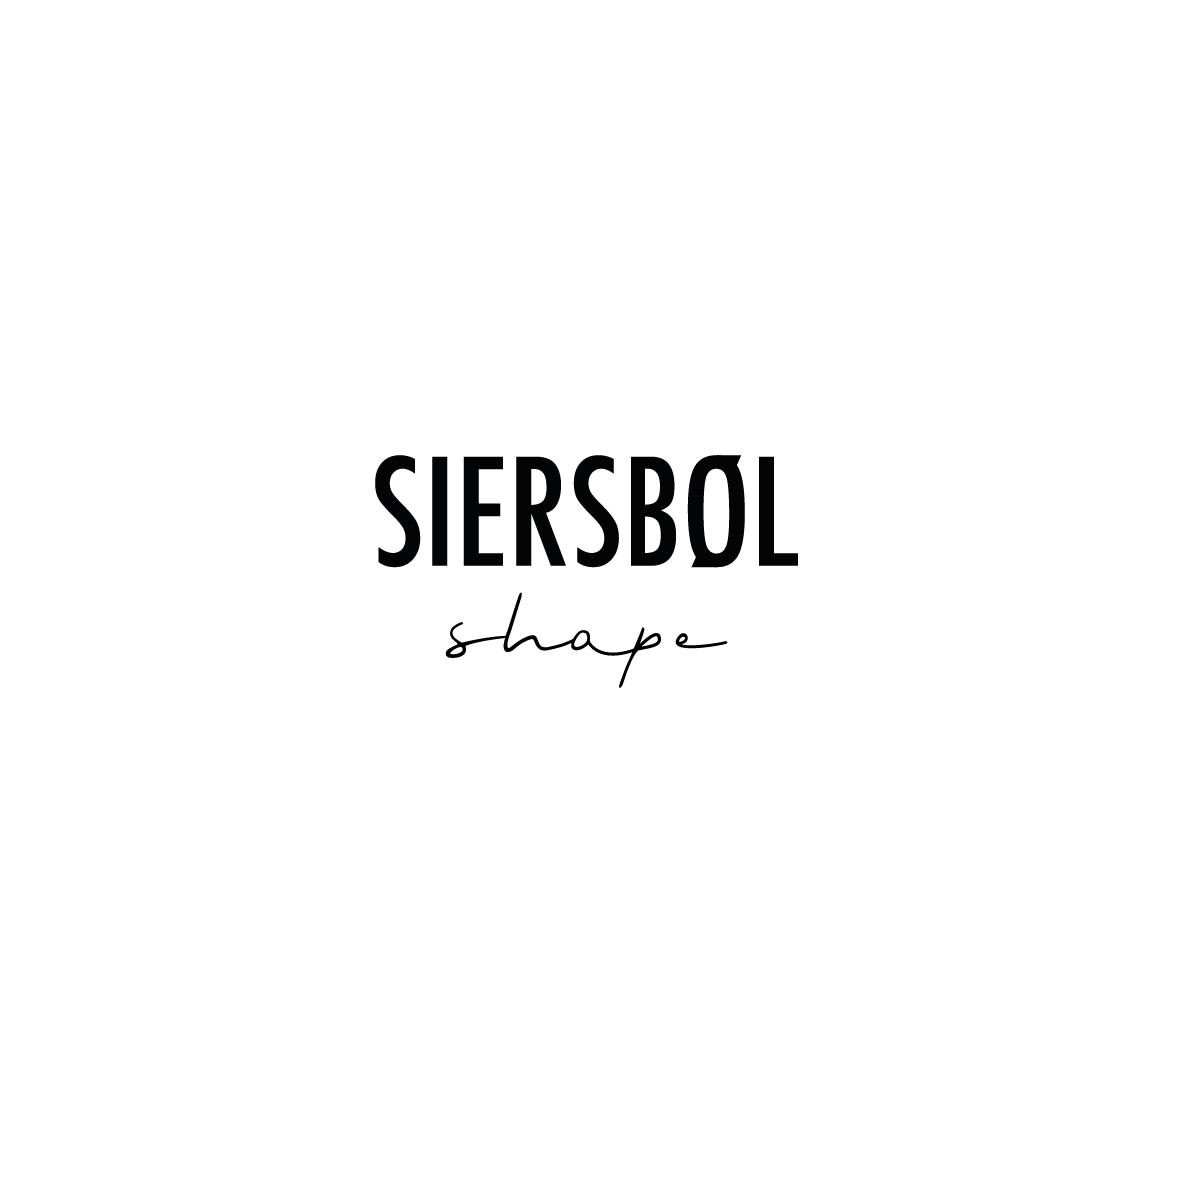 Siersbøl shape